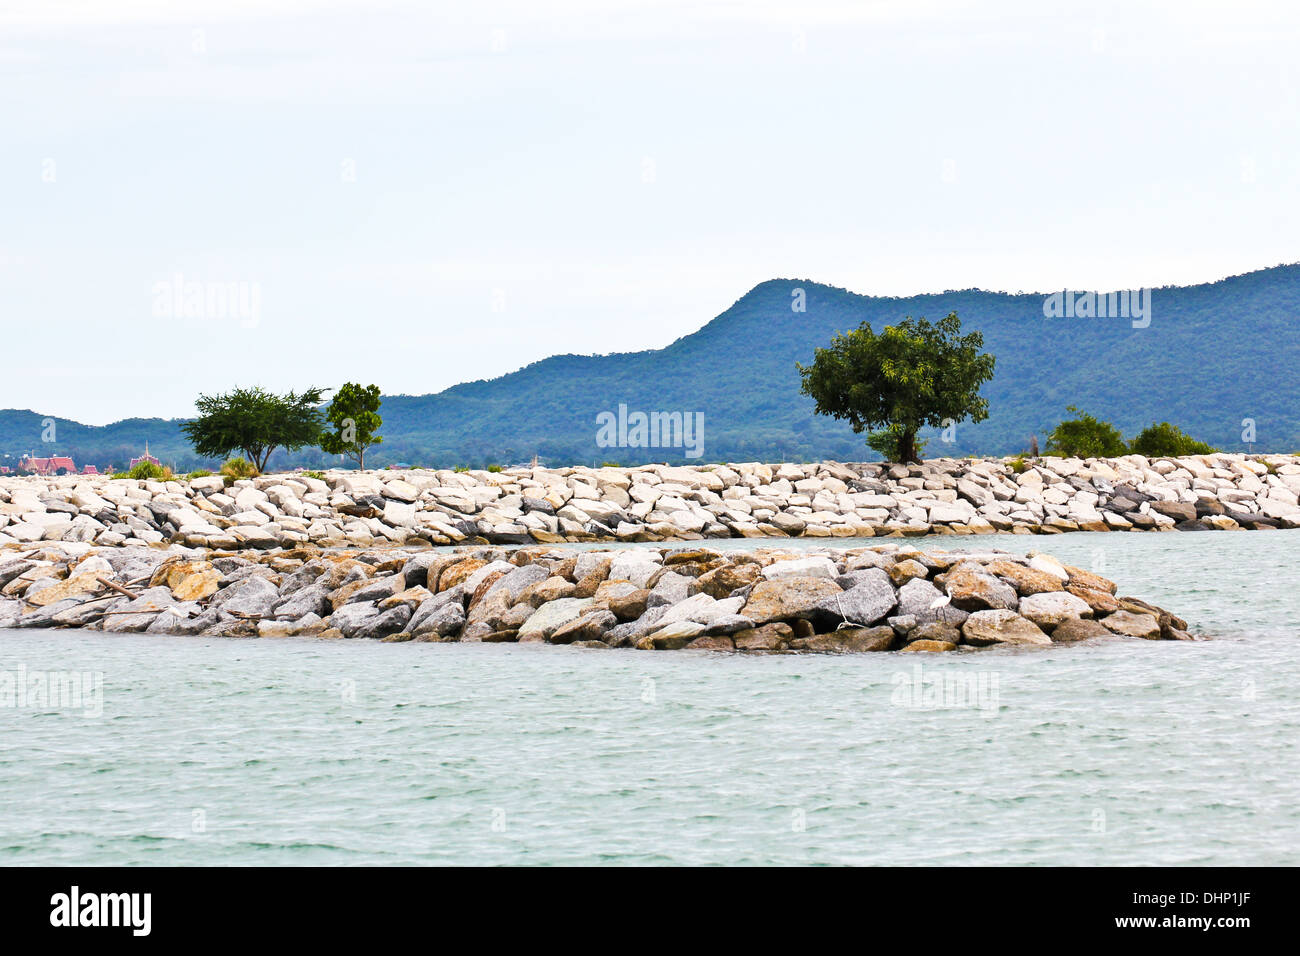 Breakwall rocks at sea coast in Thailand. Stock Photo